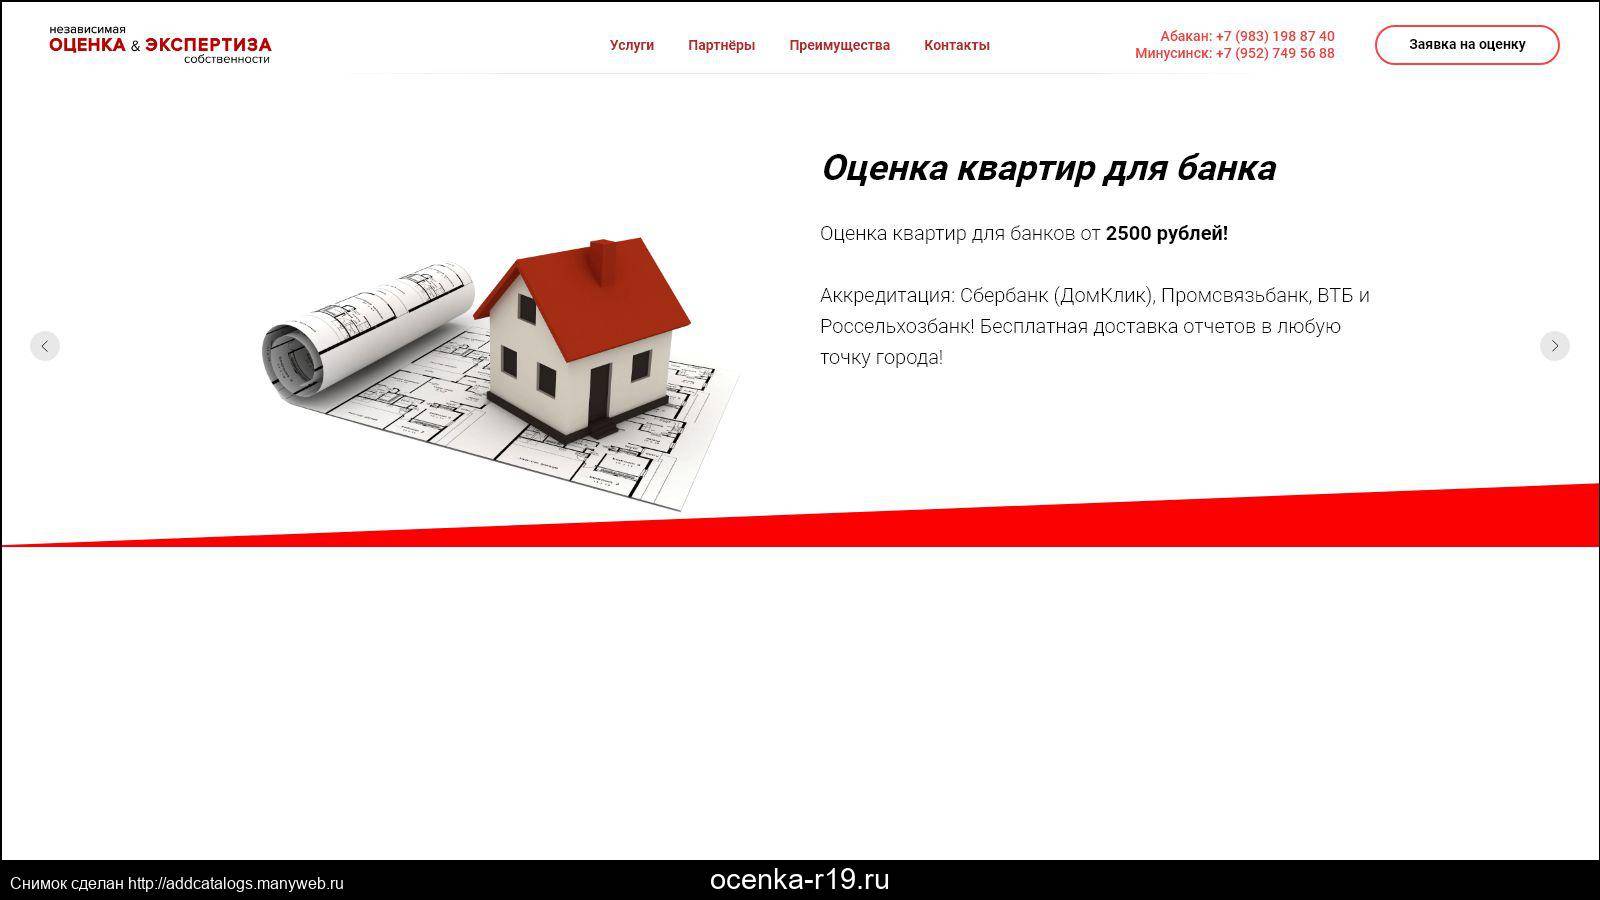 Отзывы о сбербанке: «домклик нет скидки 0,3% на процентную ставку» | банки.ру